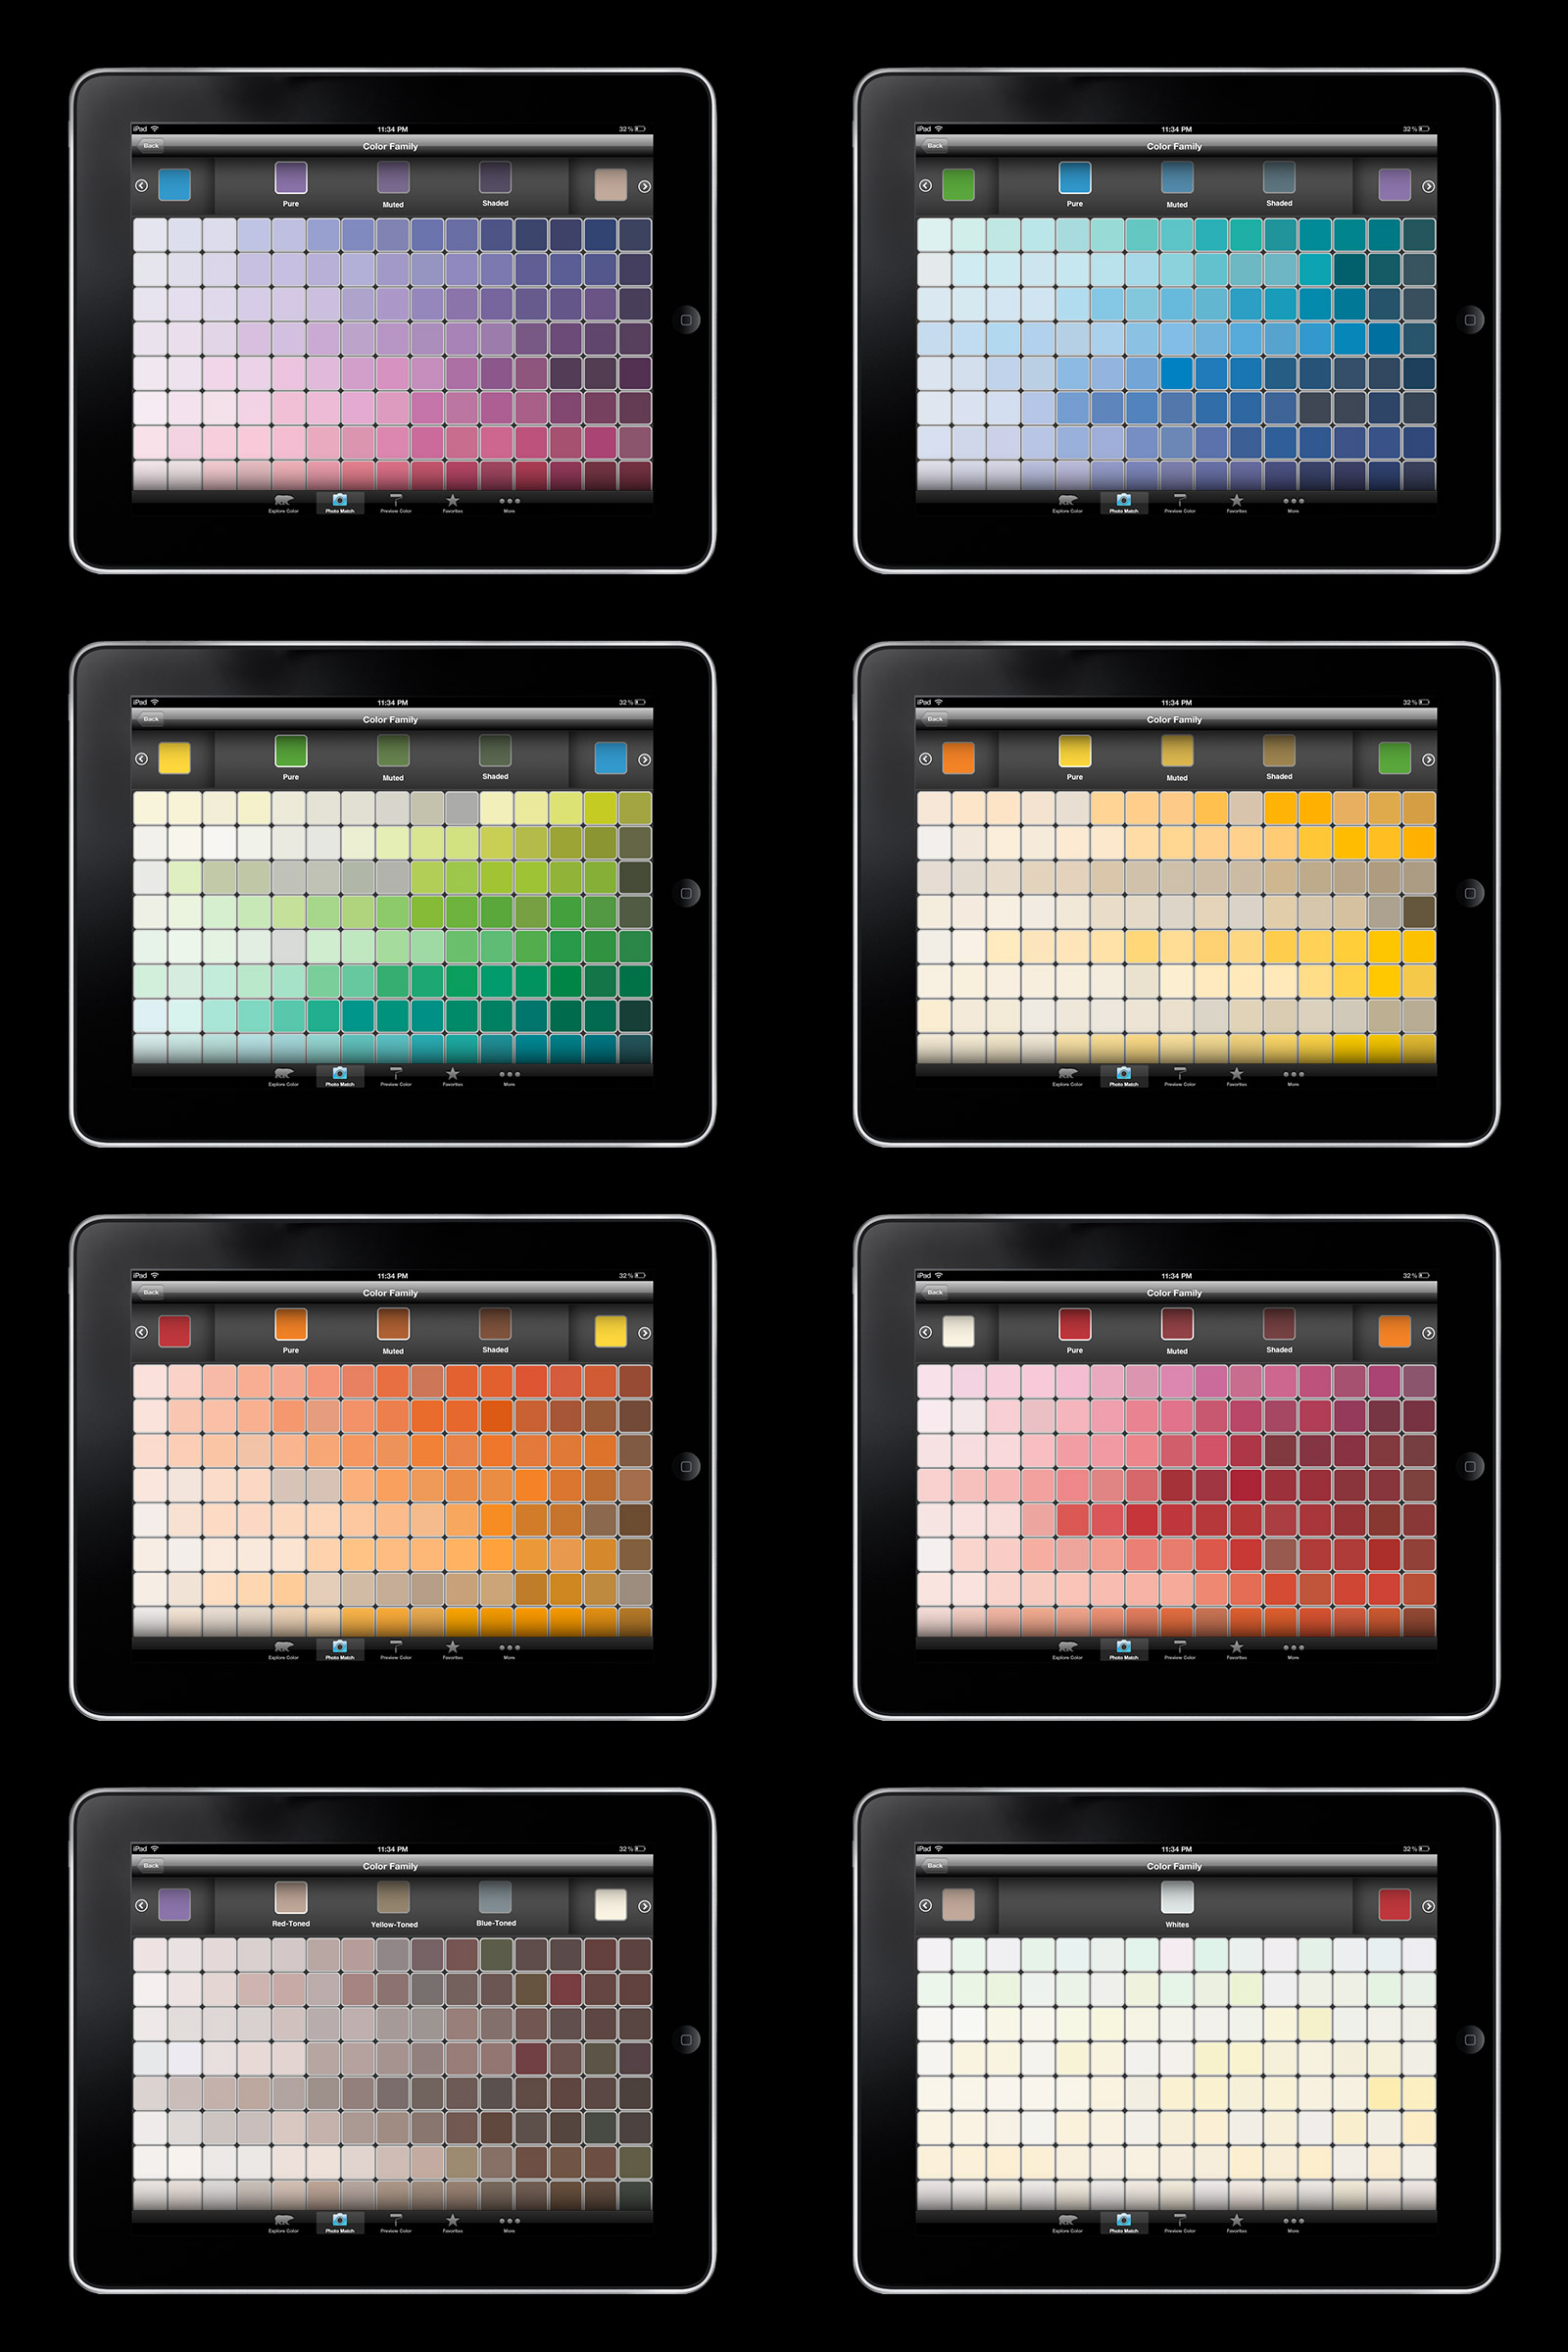 Behr Colorsmat Mobile Application